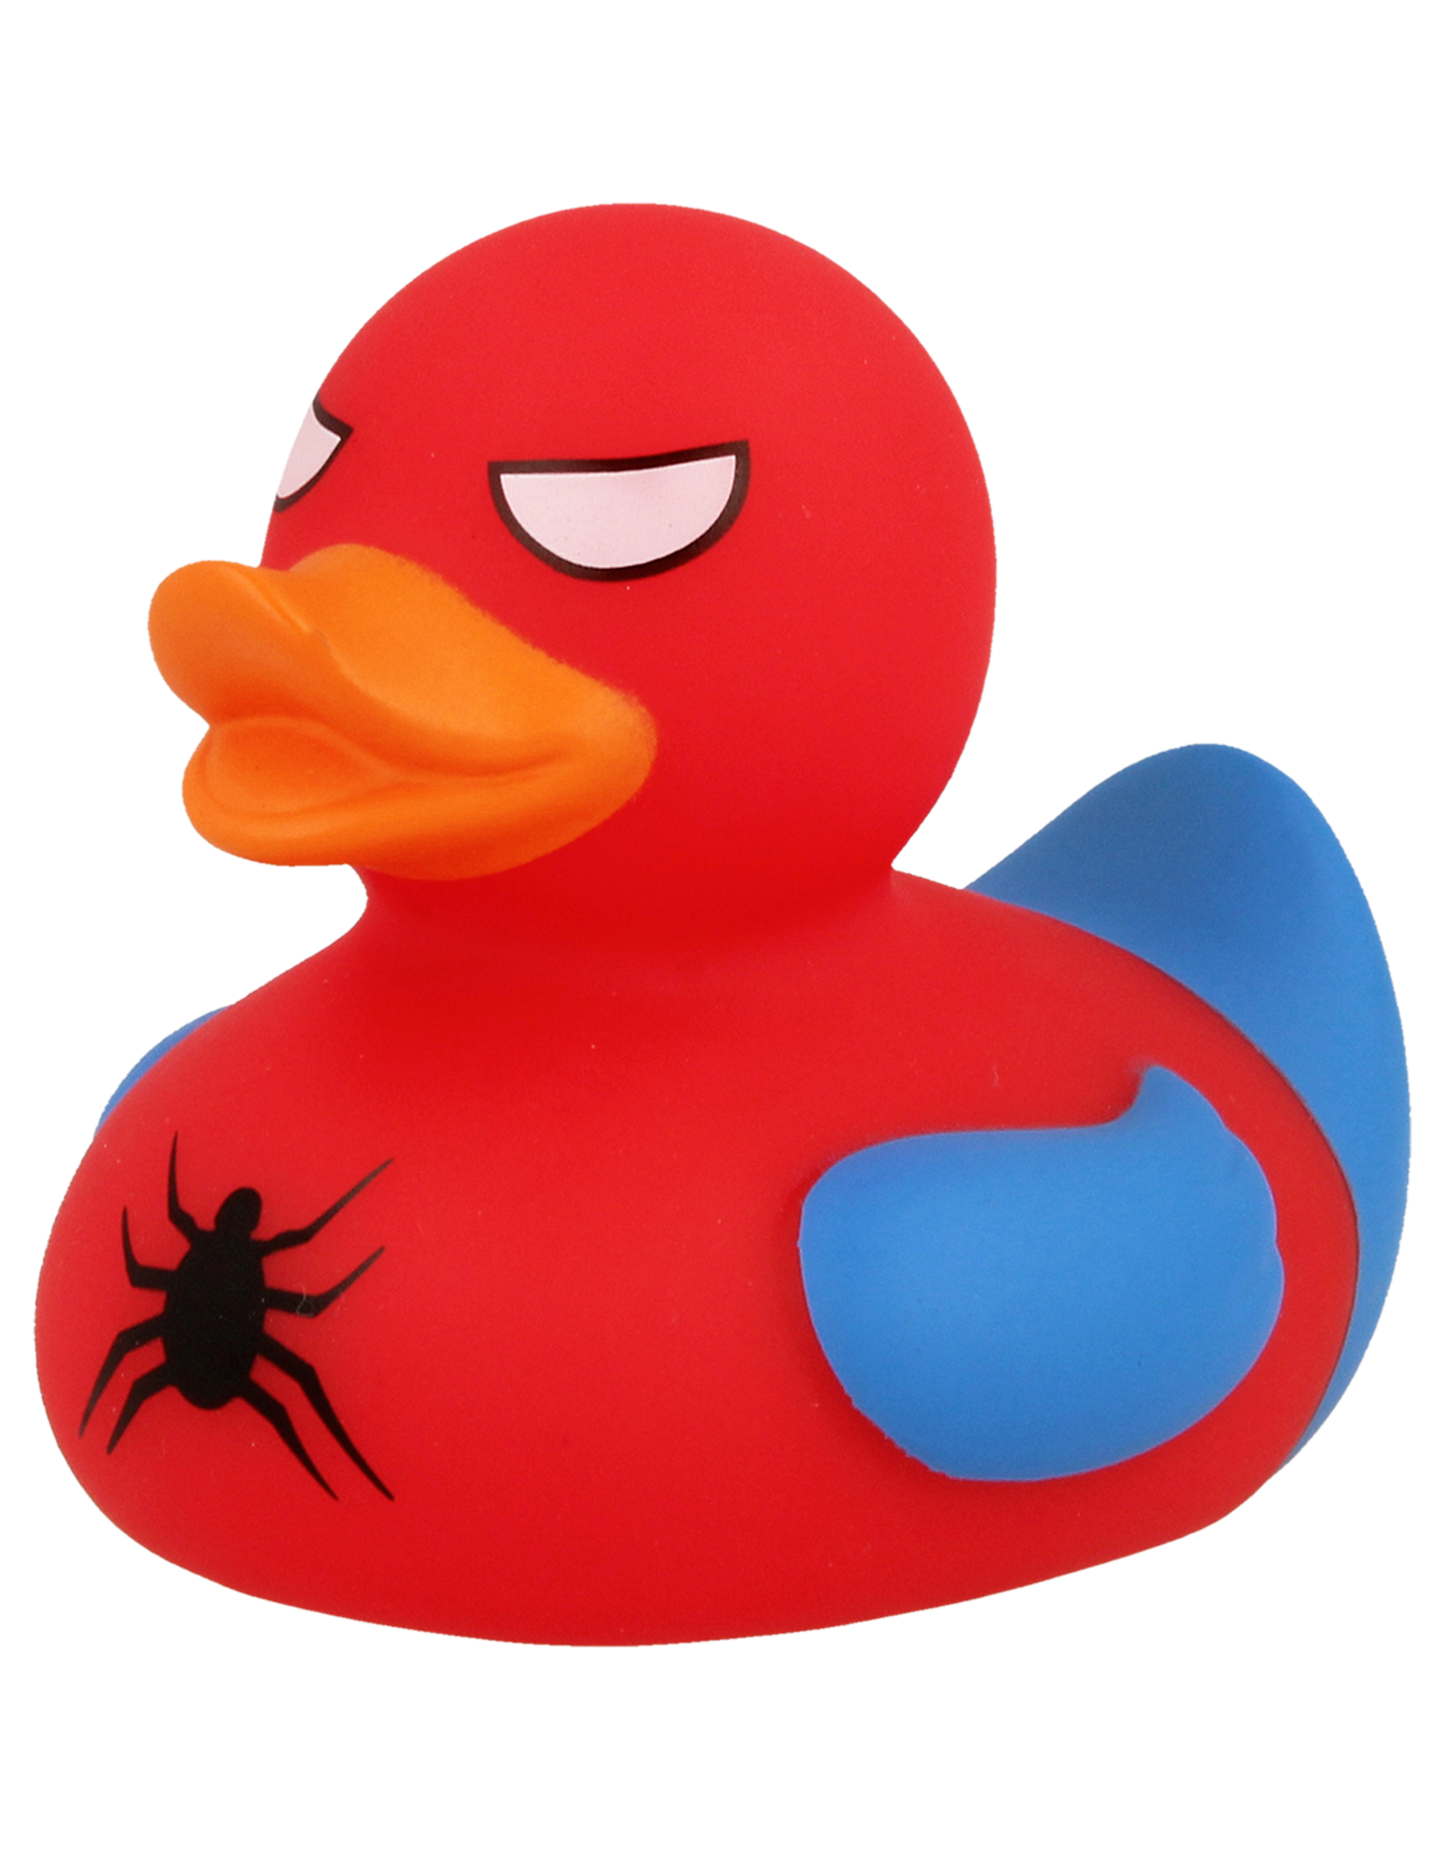 SpiderMan "Spidy" Rubber Duck